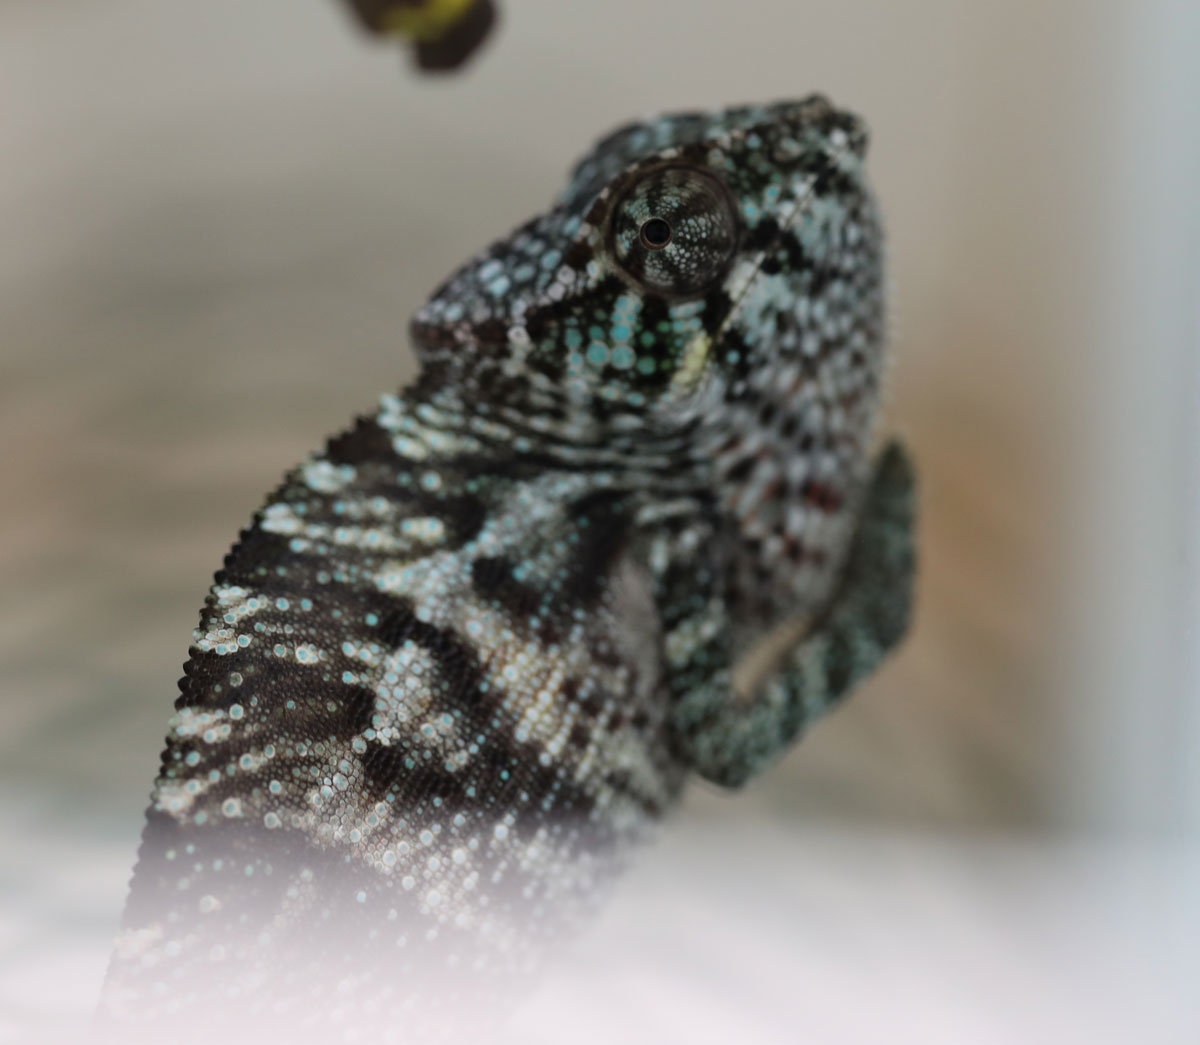 Ambanja panther chameleon